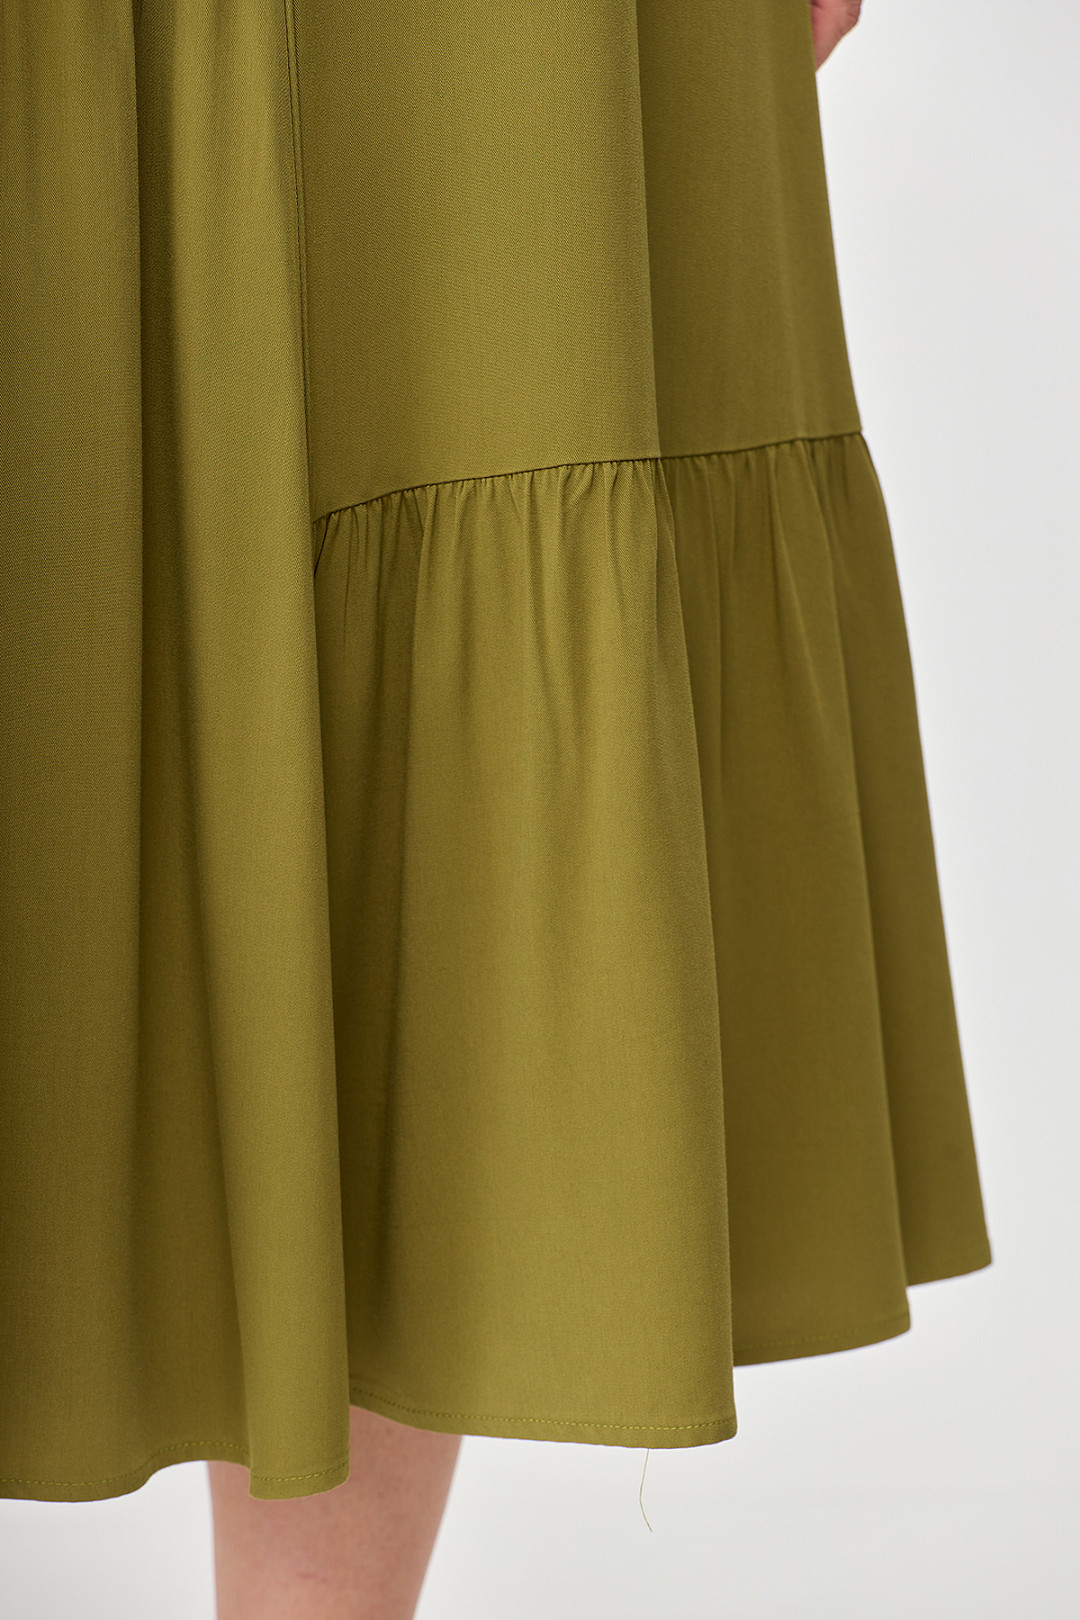 Платье ALGRANDA (Новелла Шарм) A3730-4-2